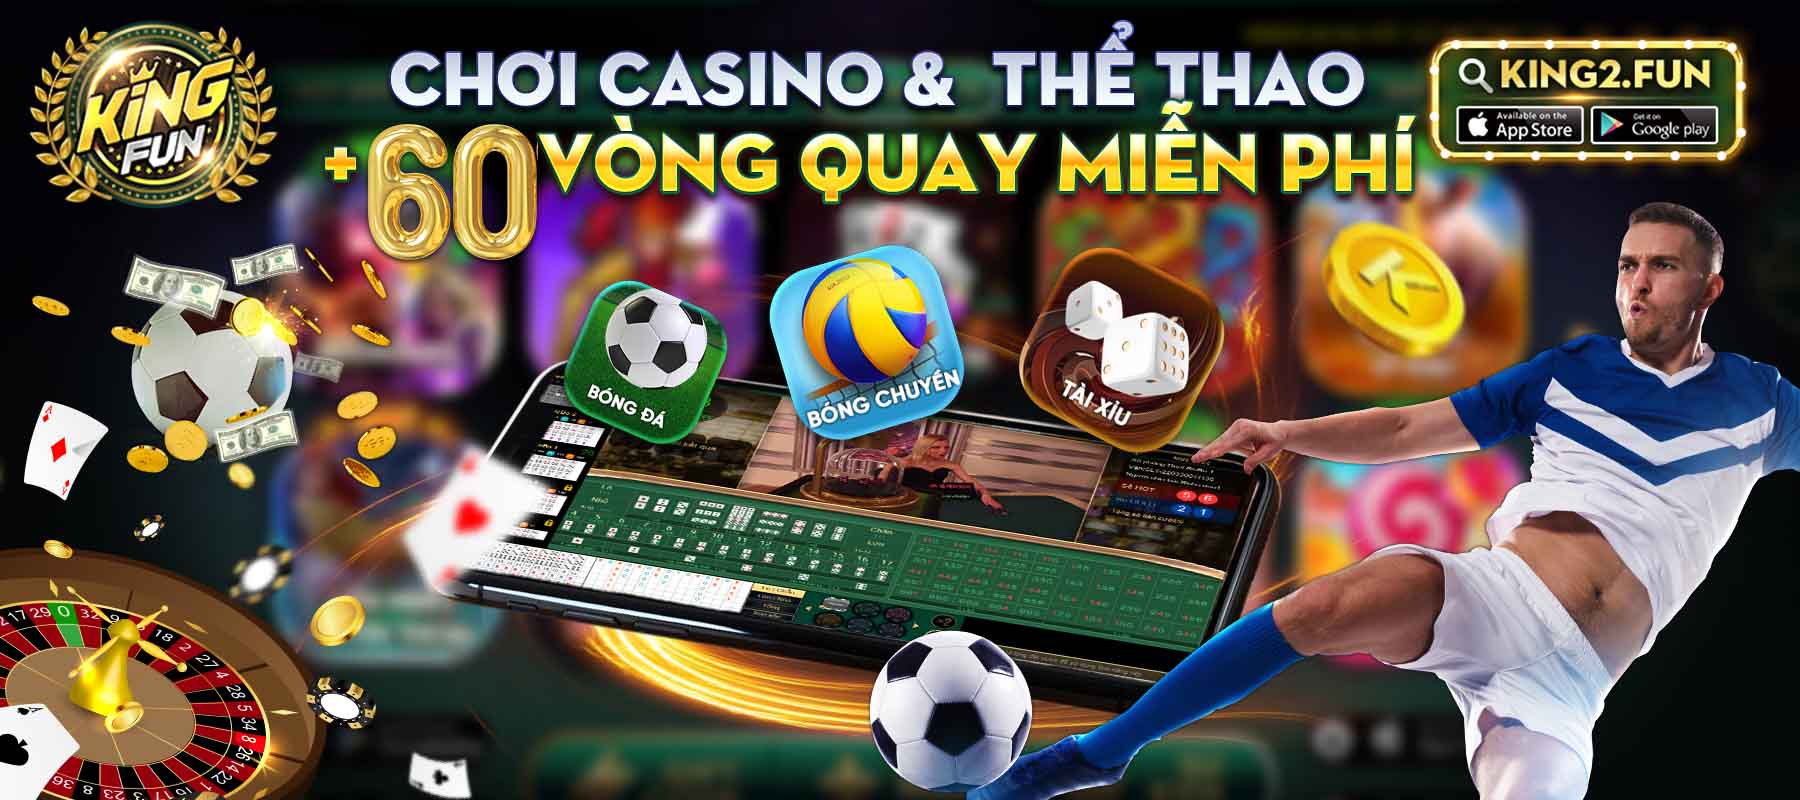 Cổng game Kingfun cập nhật sự kiện bóng đá mỗi ngày